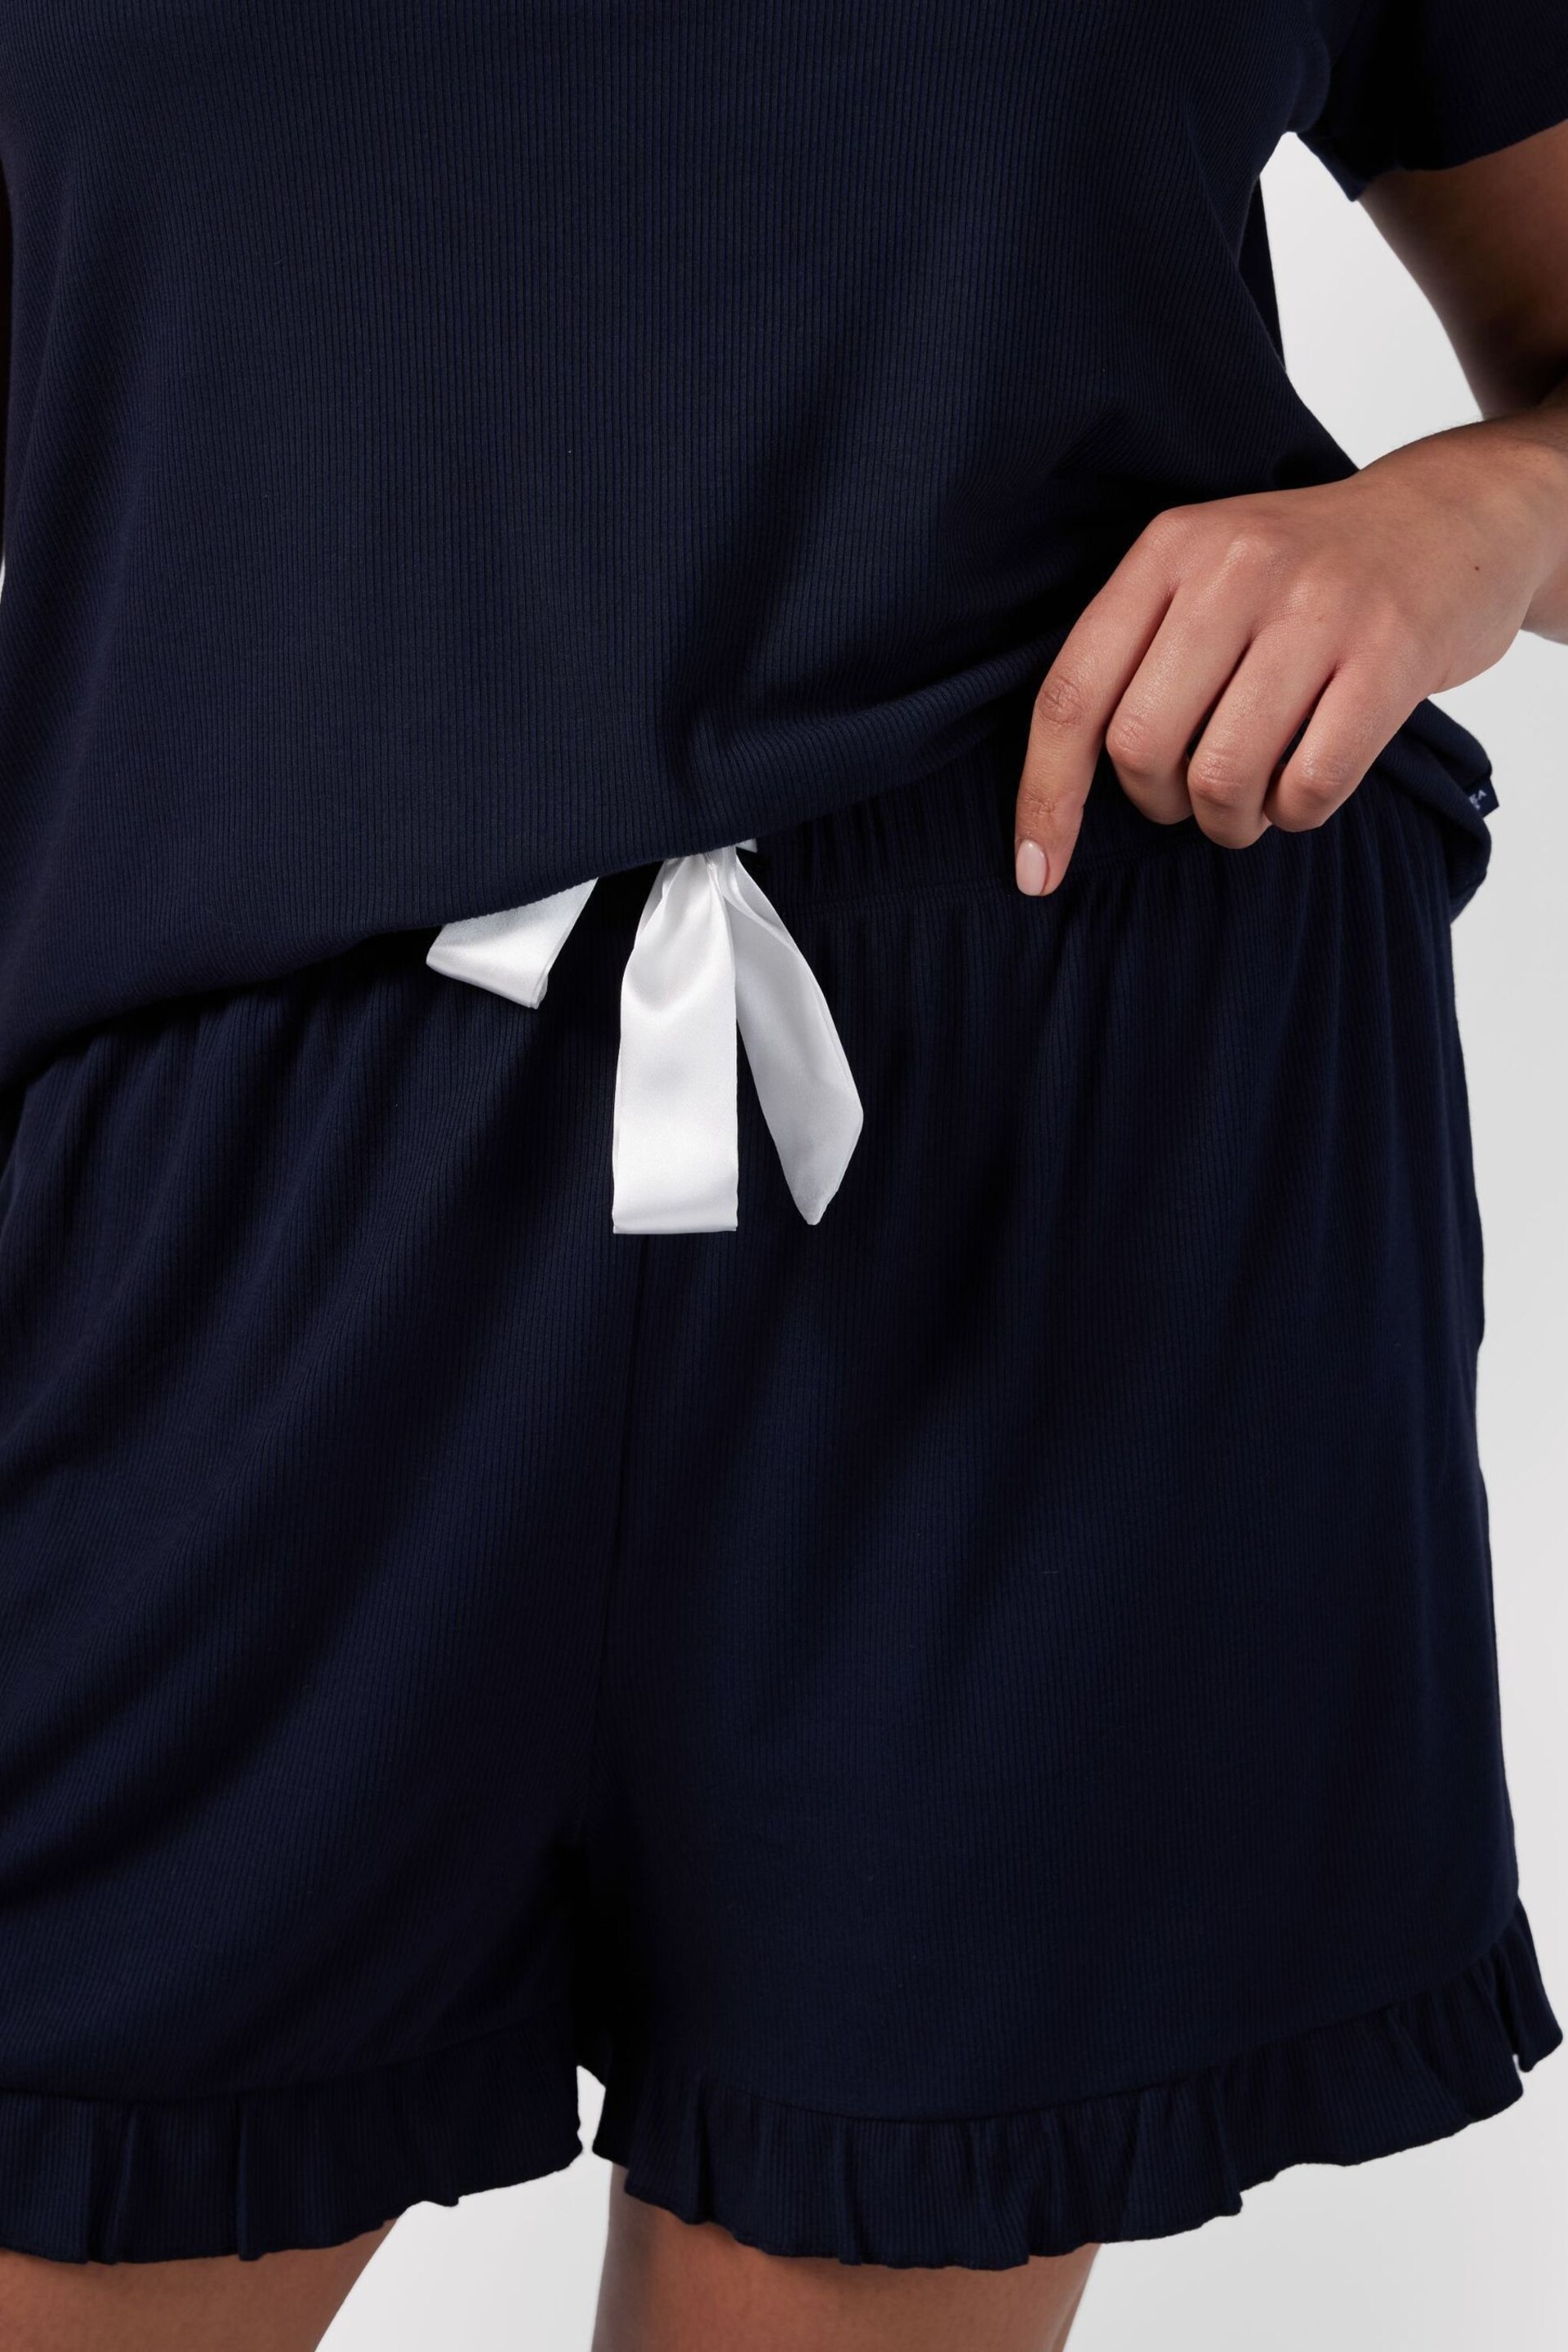 Chelsea Peers Navy Curve Ribbed Short Pyjama Set - Image 5 of 5